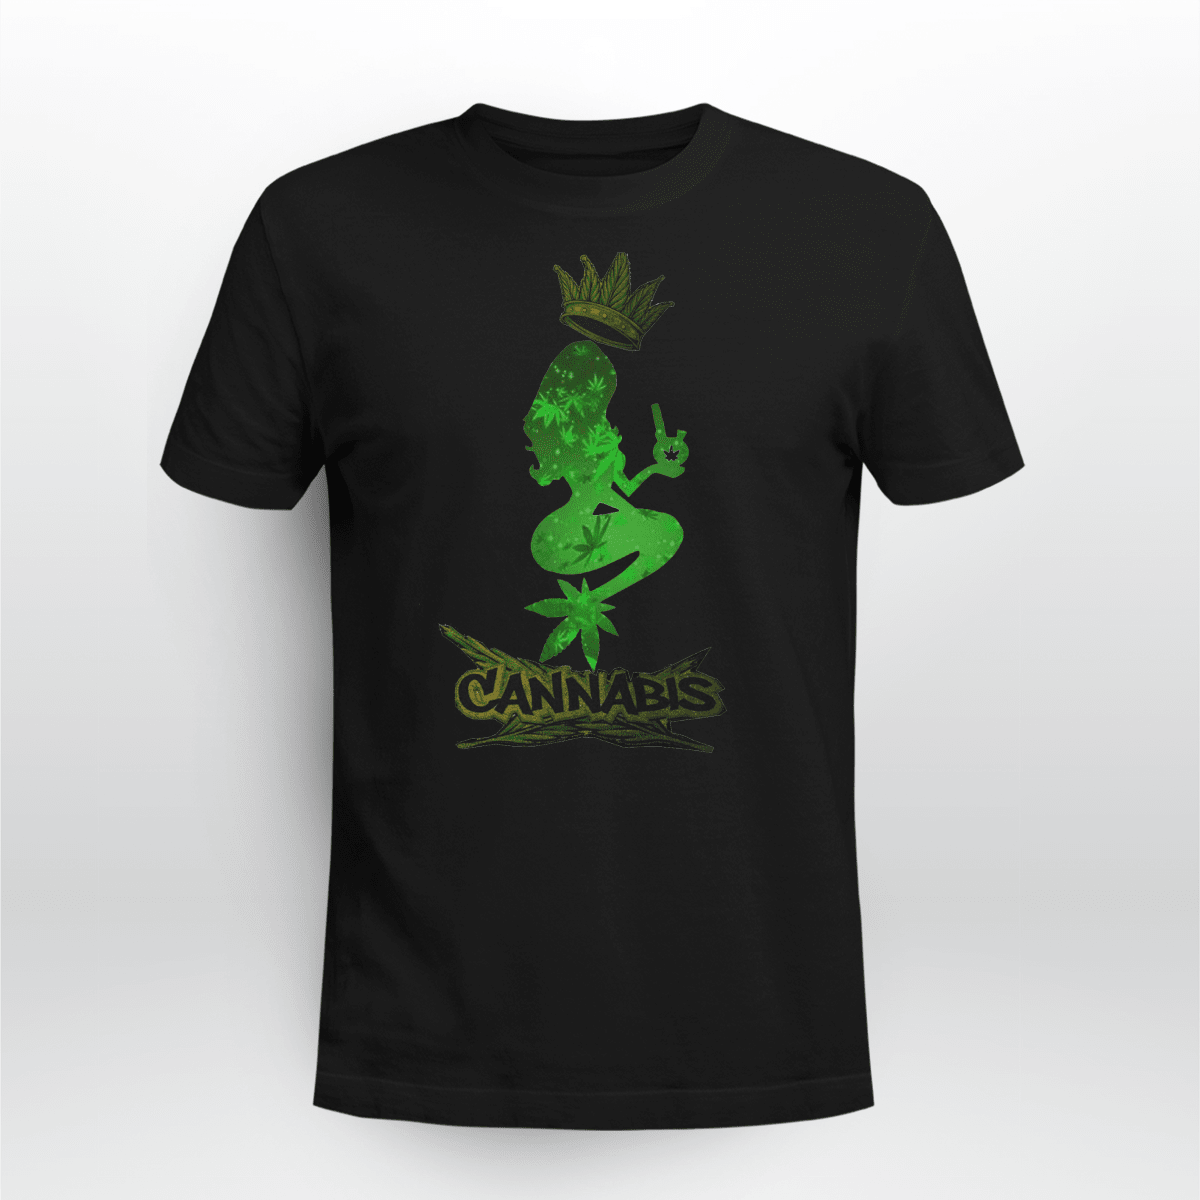 Mermaids Smoke Seaweed Cannabis Marijuana Shirt